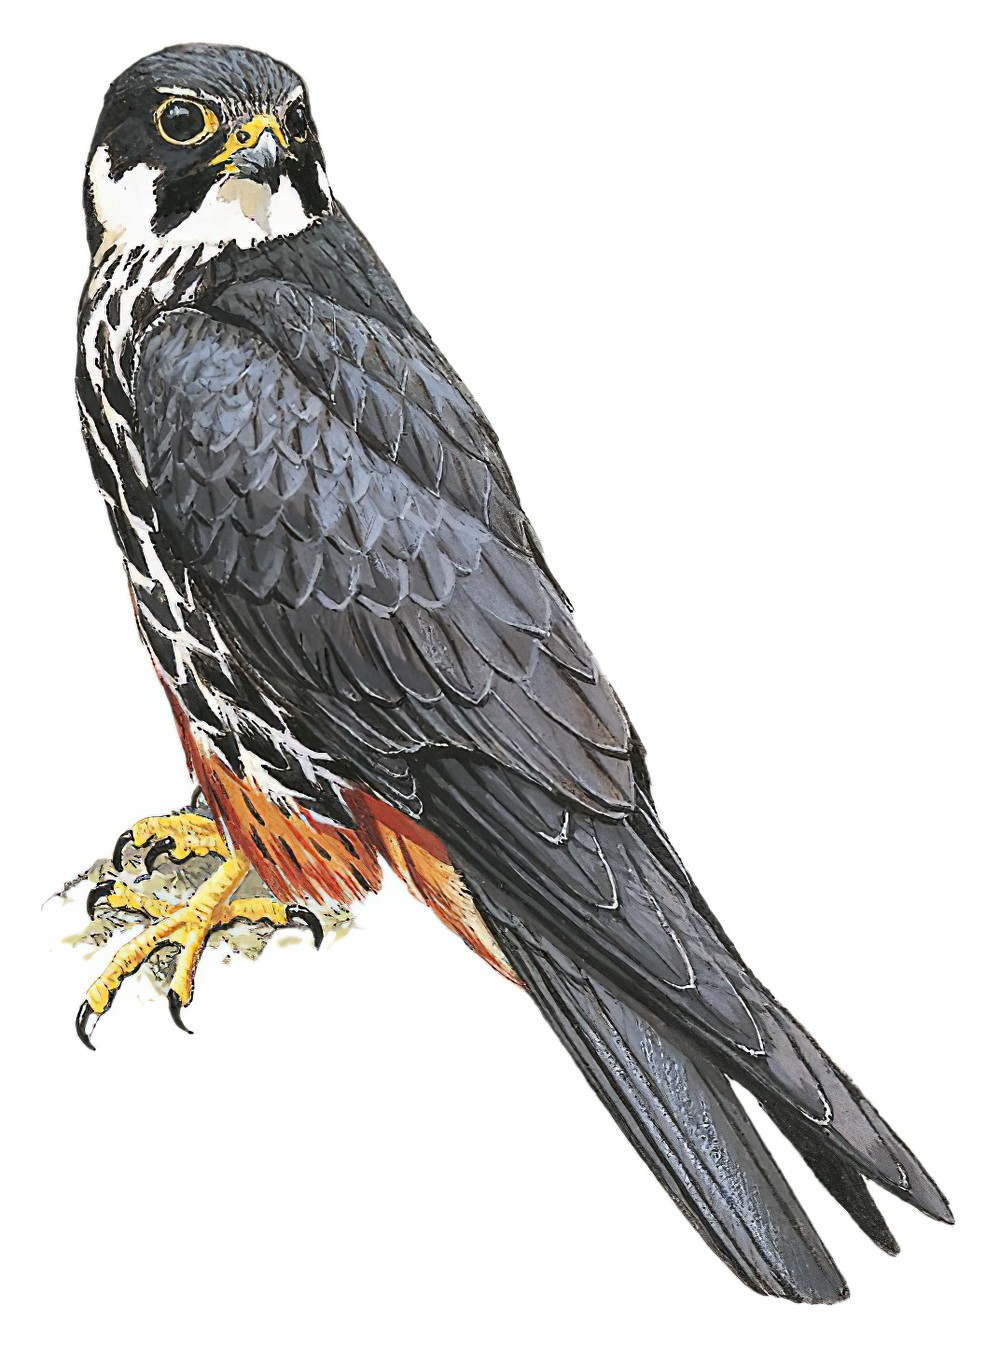 Eurasian Hobby / Falco subbuteo